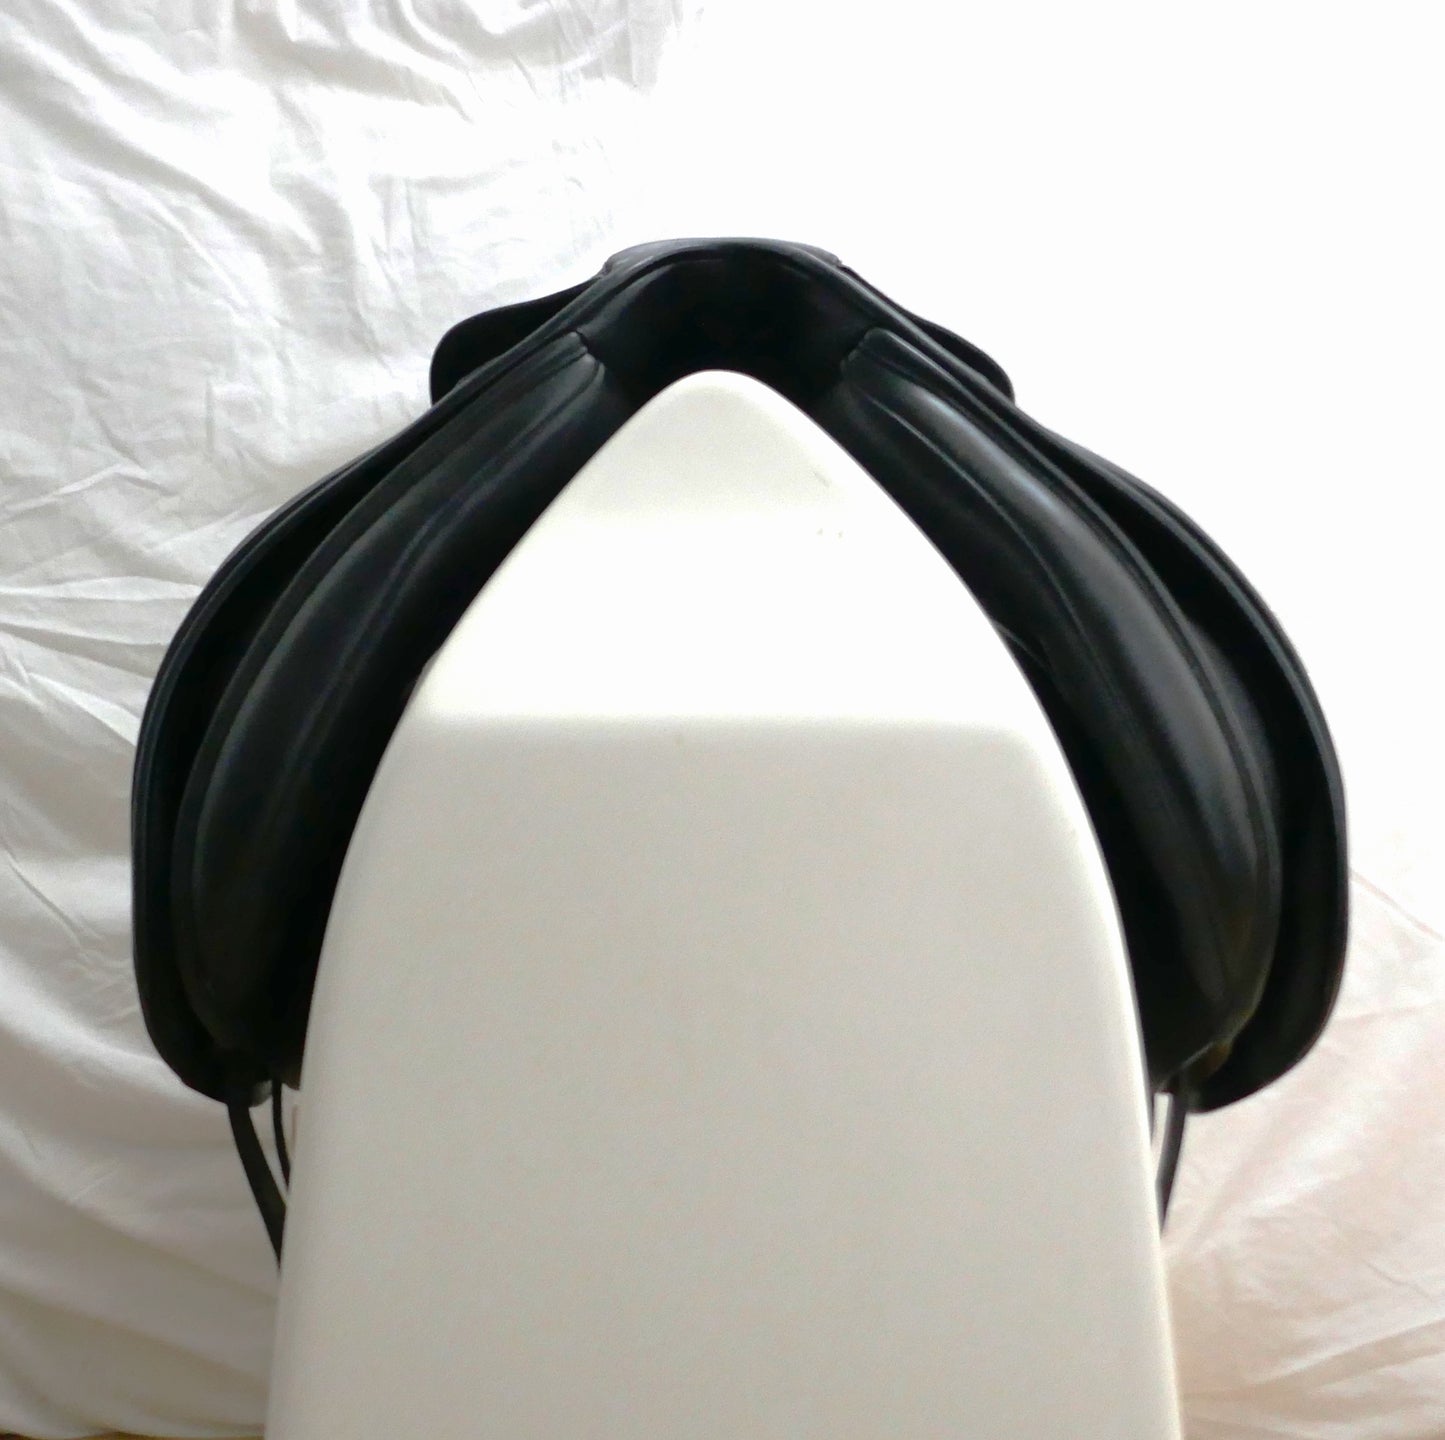 Bates Cair Caprilli Dressage Saddle - 17.5" Adjustable Black TD48